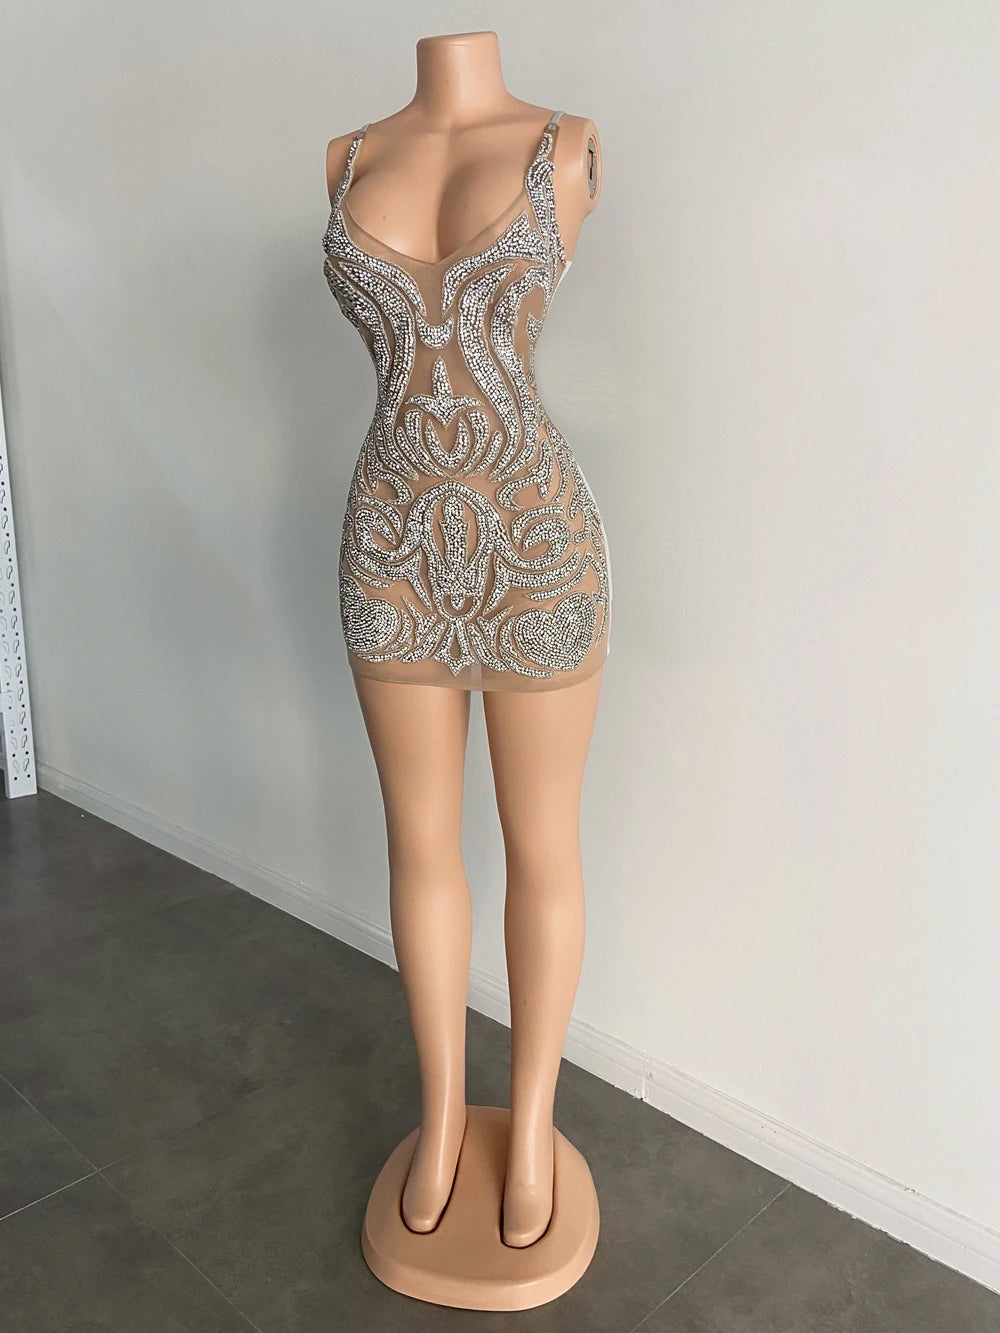 Maddi Luxury Mini Dress